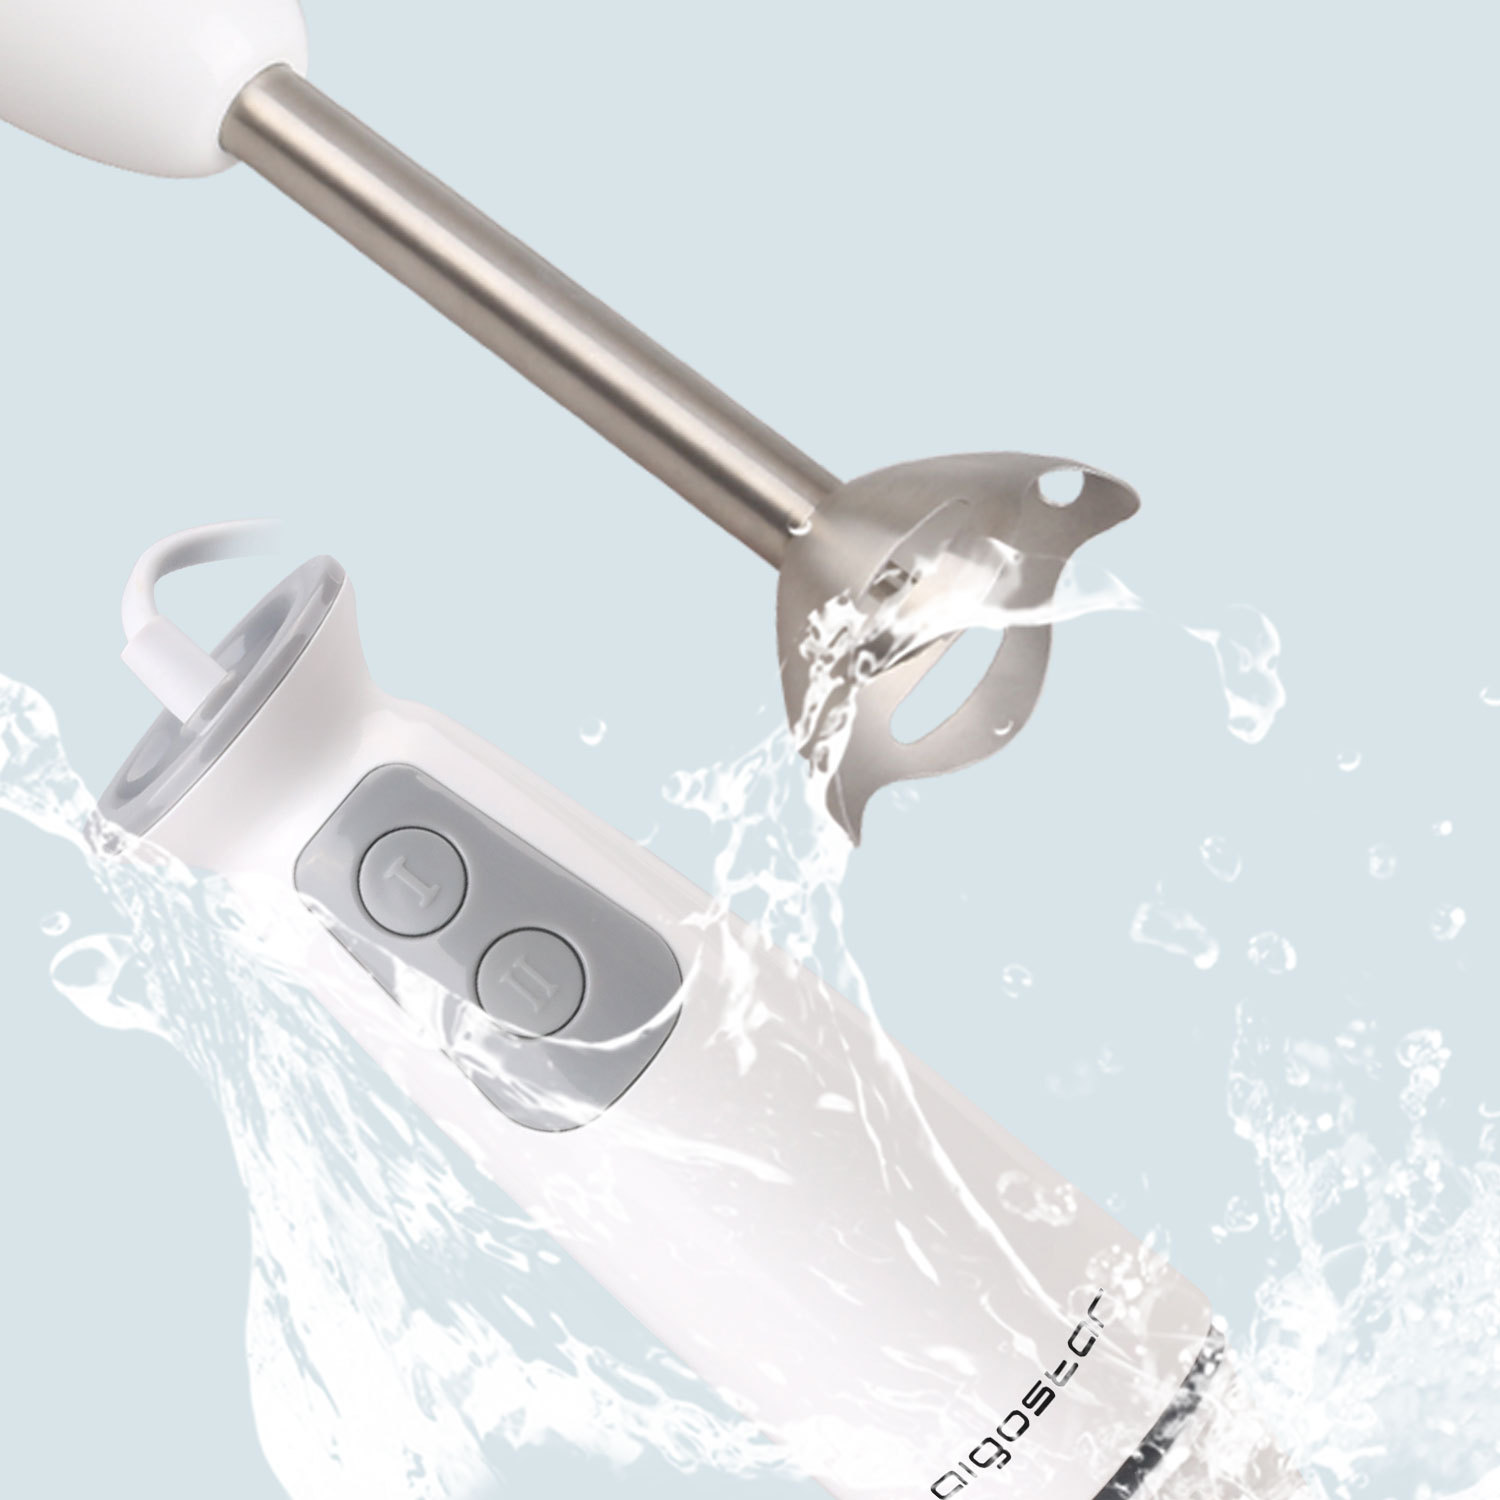 Aigostar Stirring White 30ISF - Stabmixer mit 700ml Becher, 2-fach, hochwertiger Kunststoff und 304 Food Grade Edelstahl, 400W, BPA frei, weiß, . EINWEGVERPACKUNG.